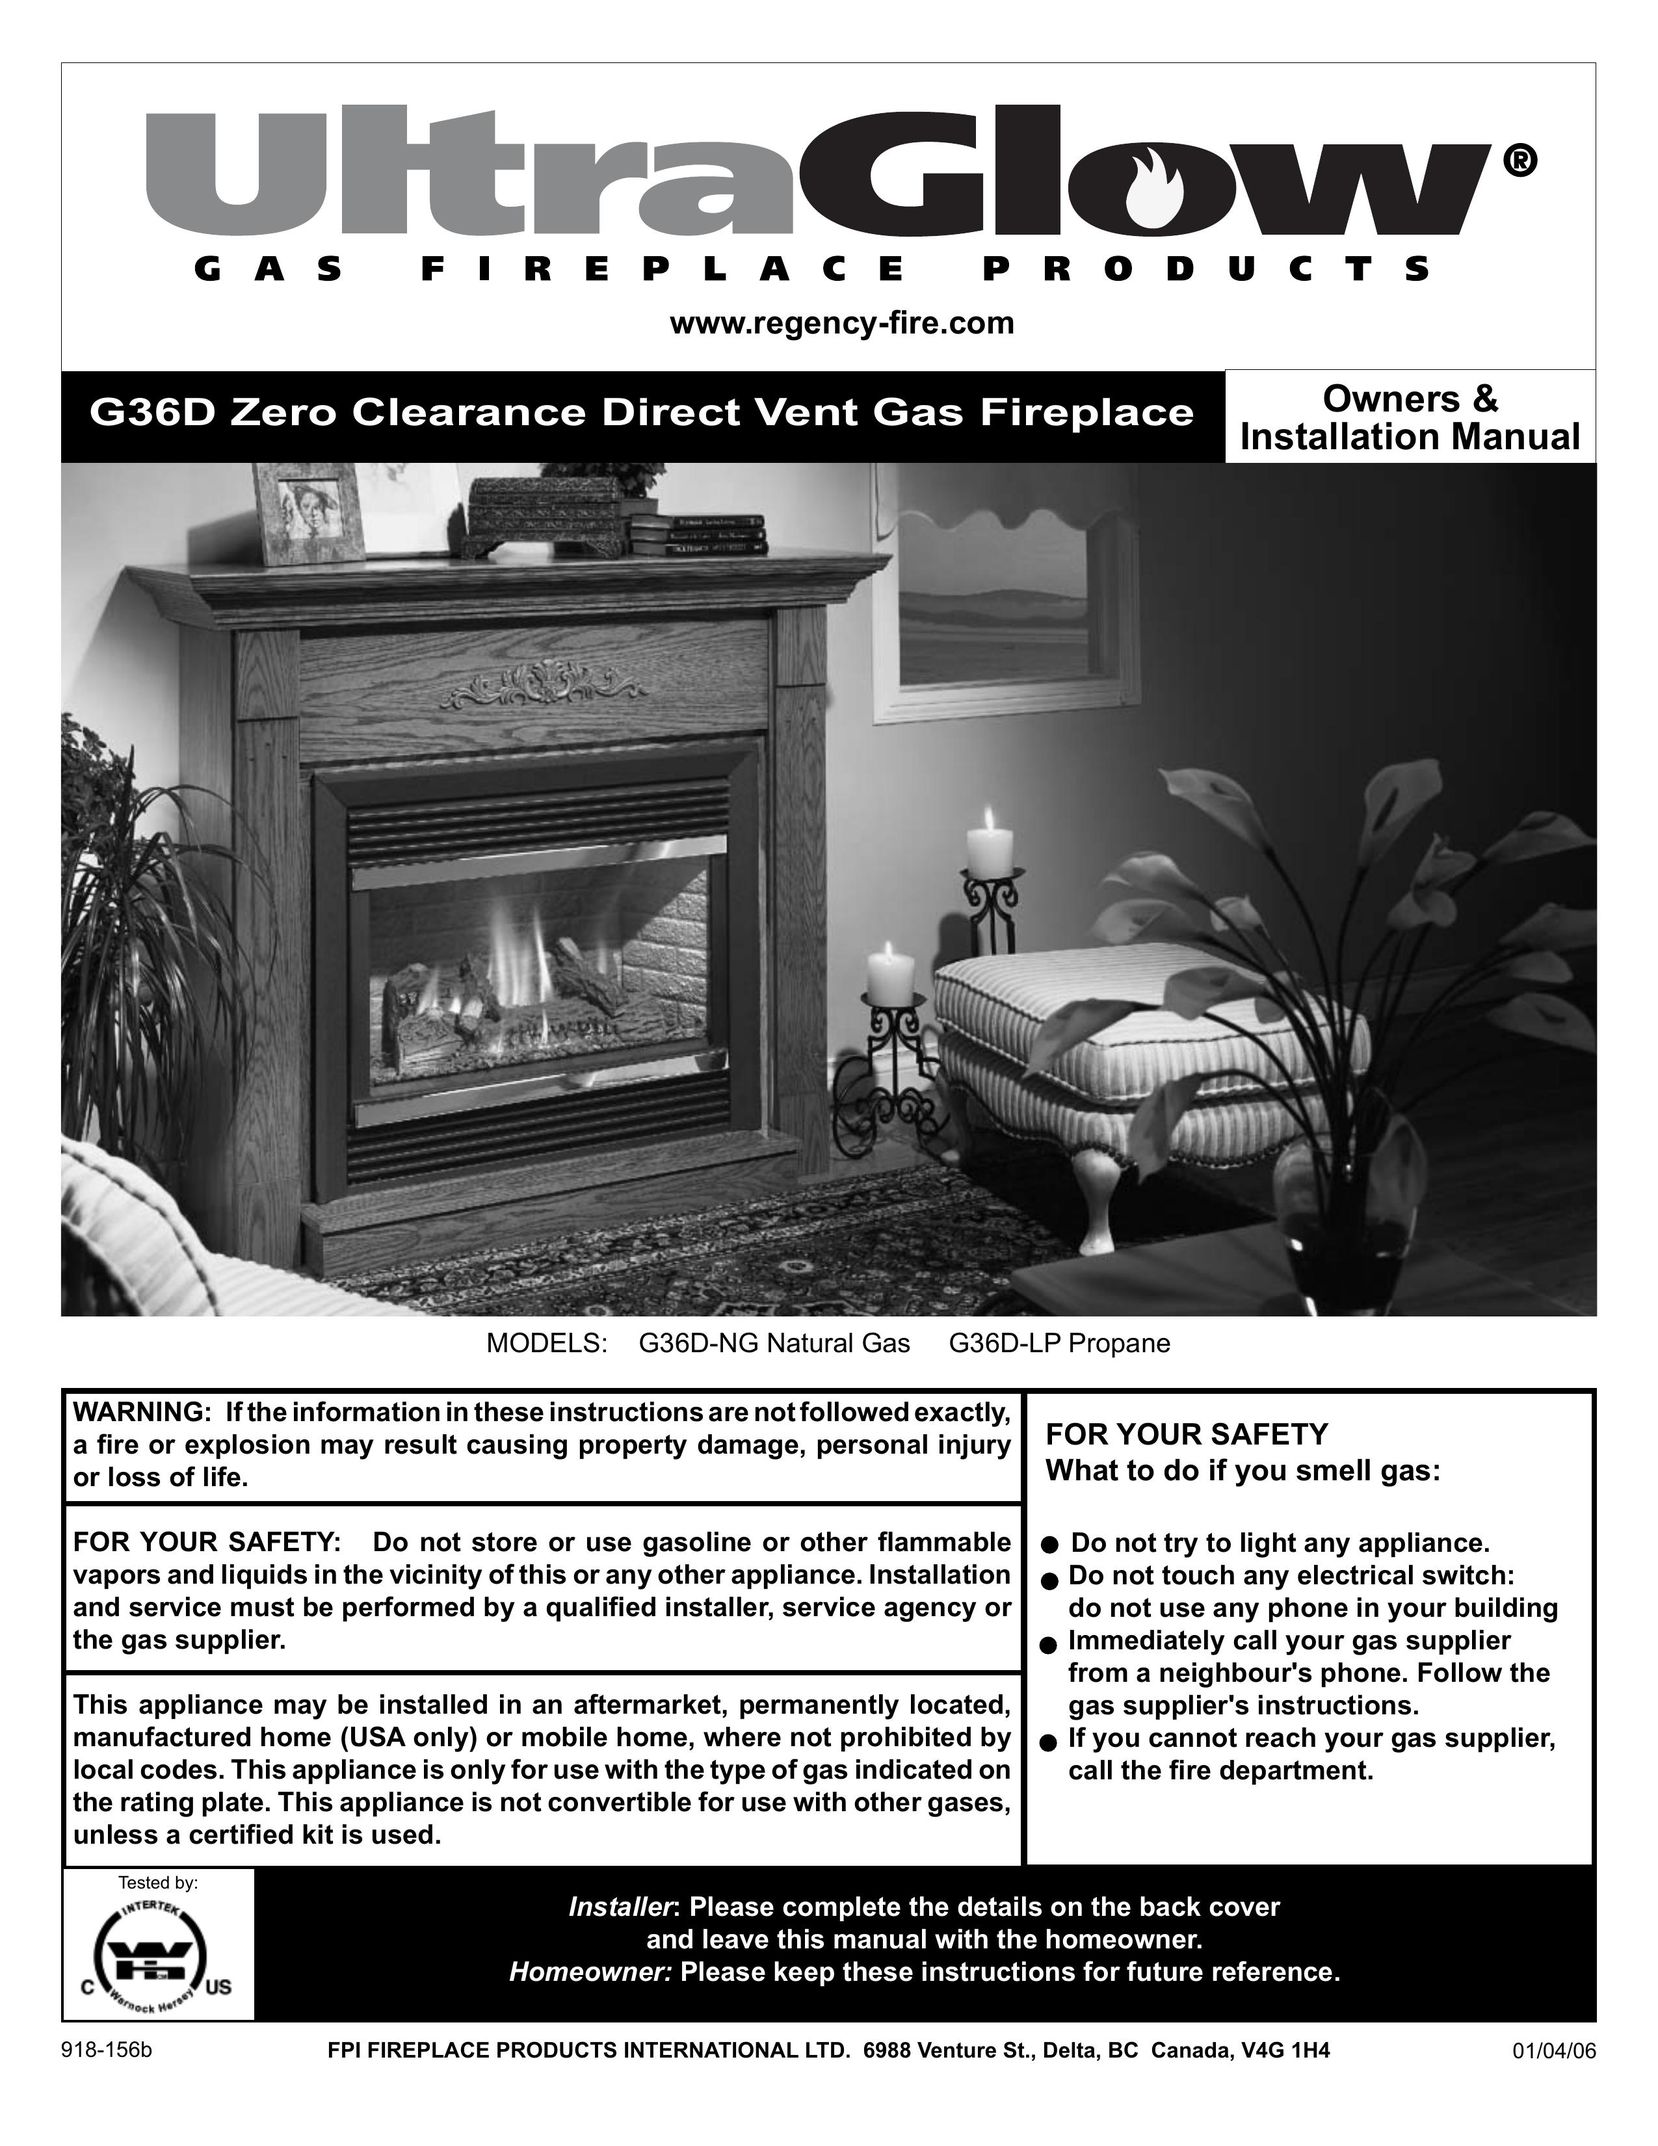 Regency G36D-LP PROPANE Indoor Fireplace User Manual